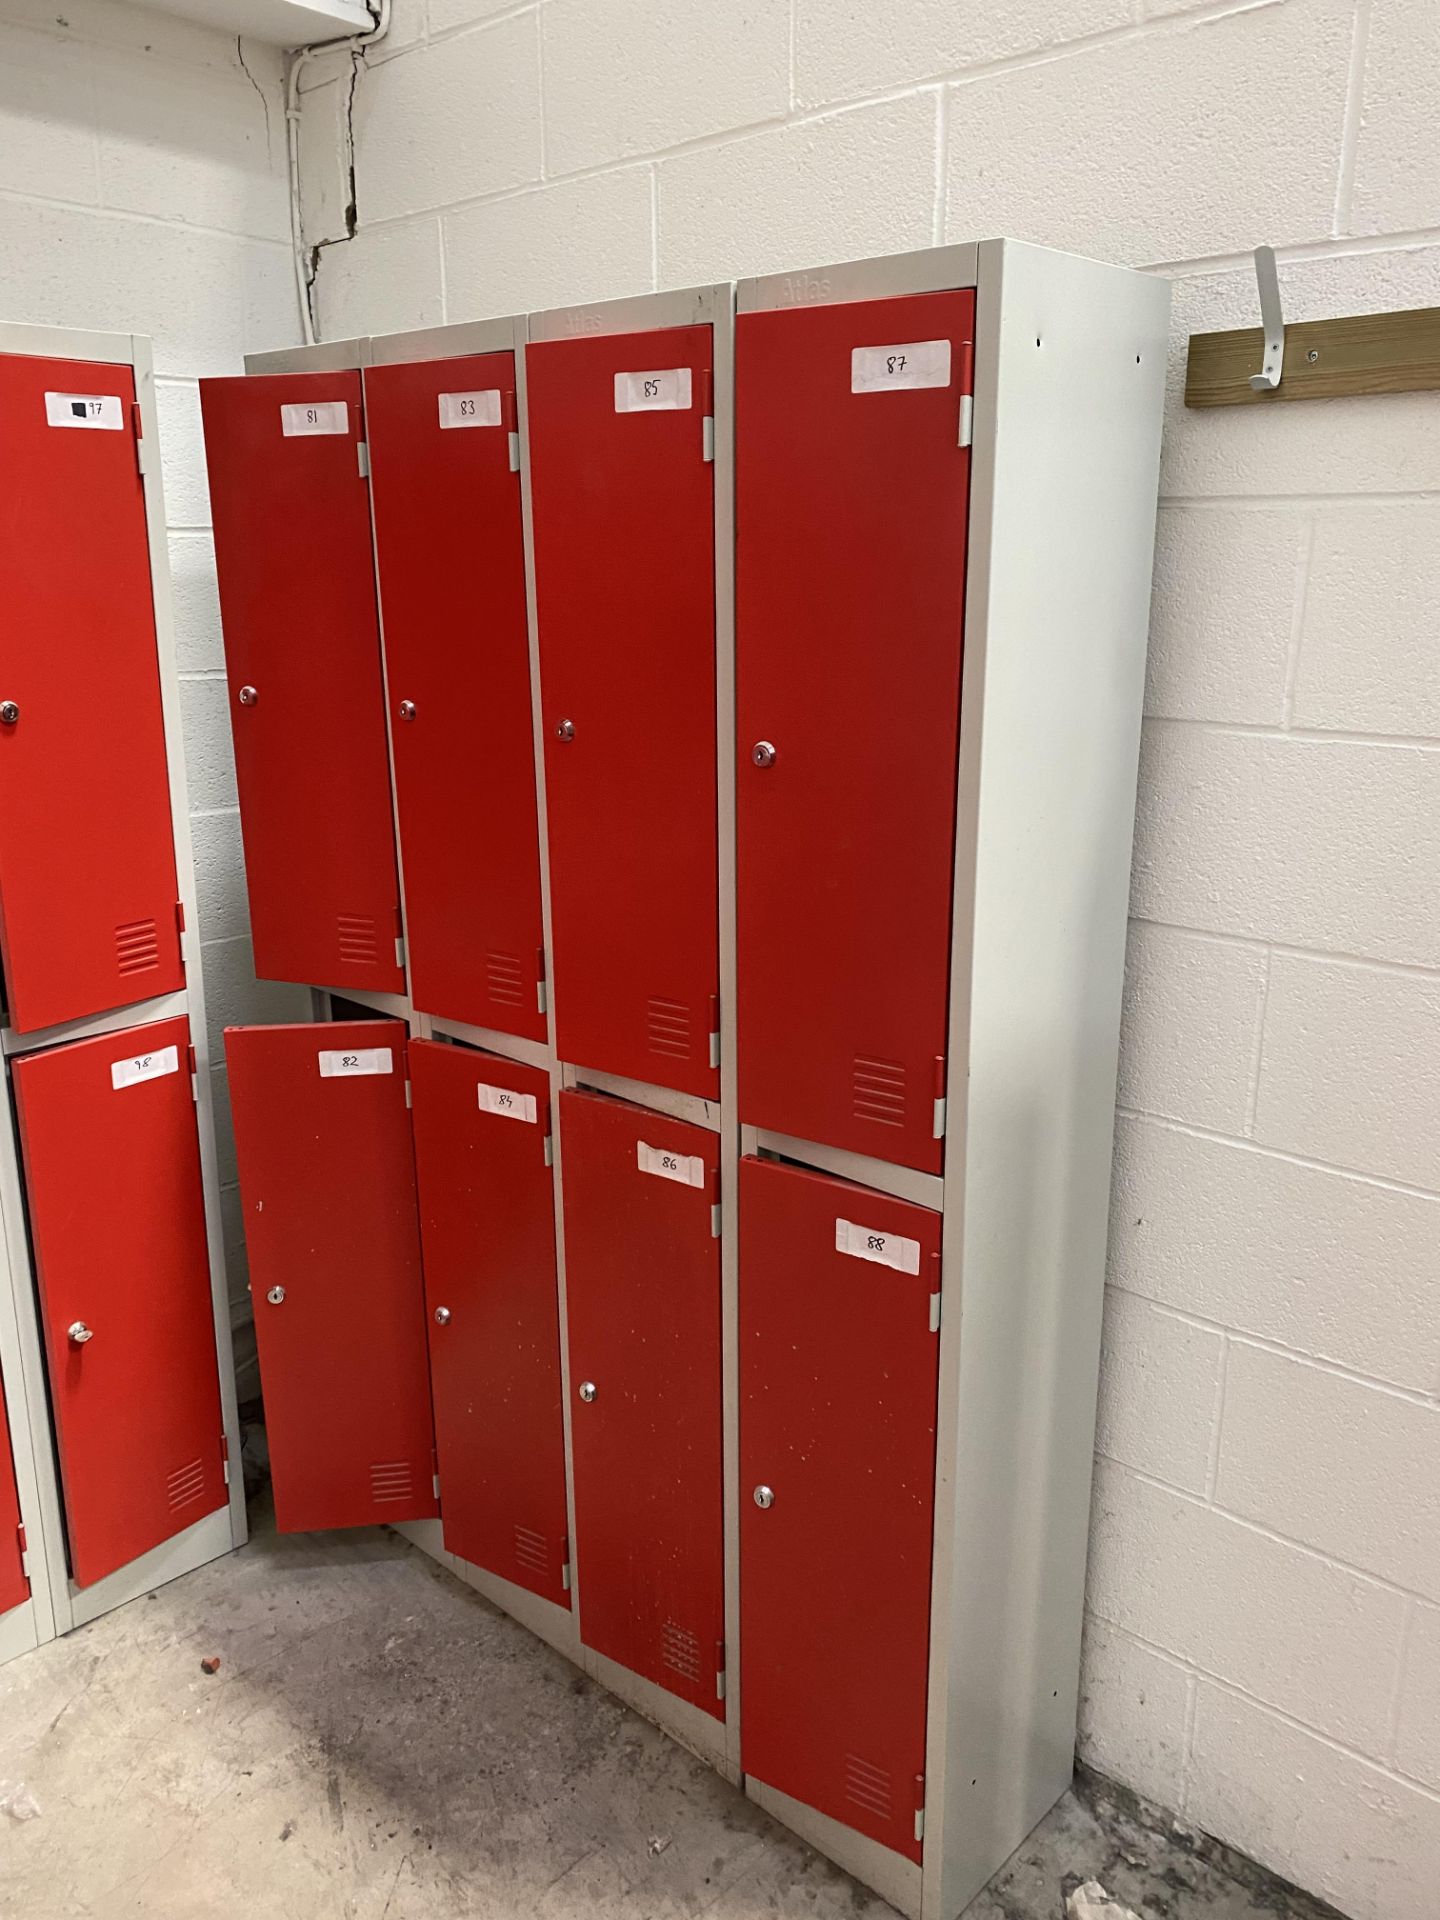 23 No. double door personell lockers, doors opened and unlocked - Image 5 of 7